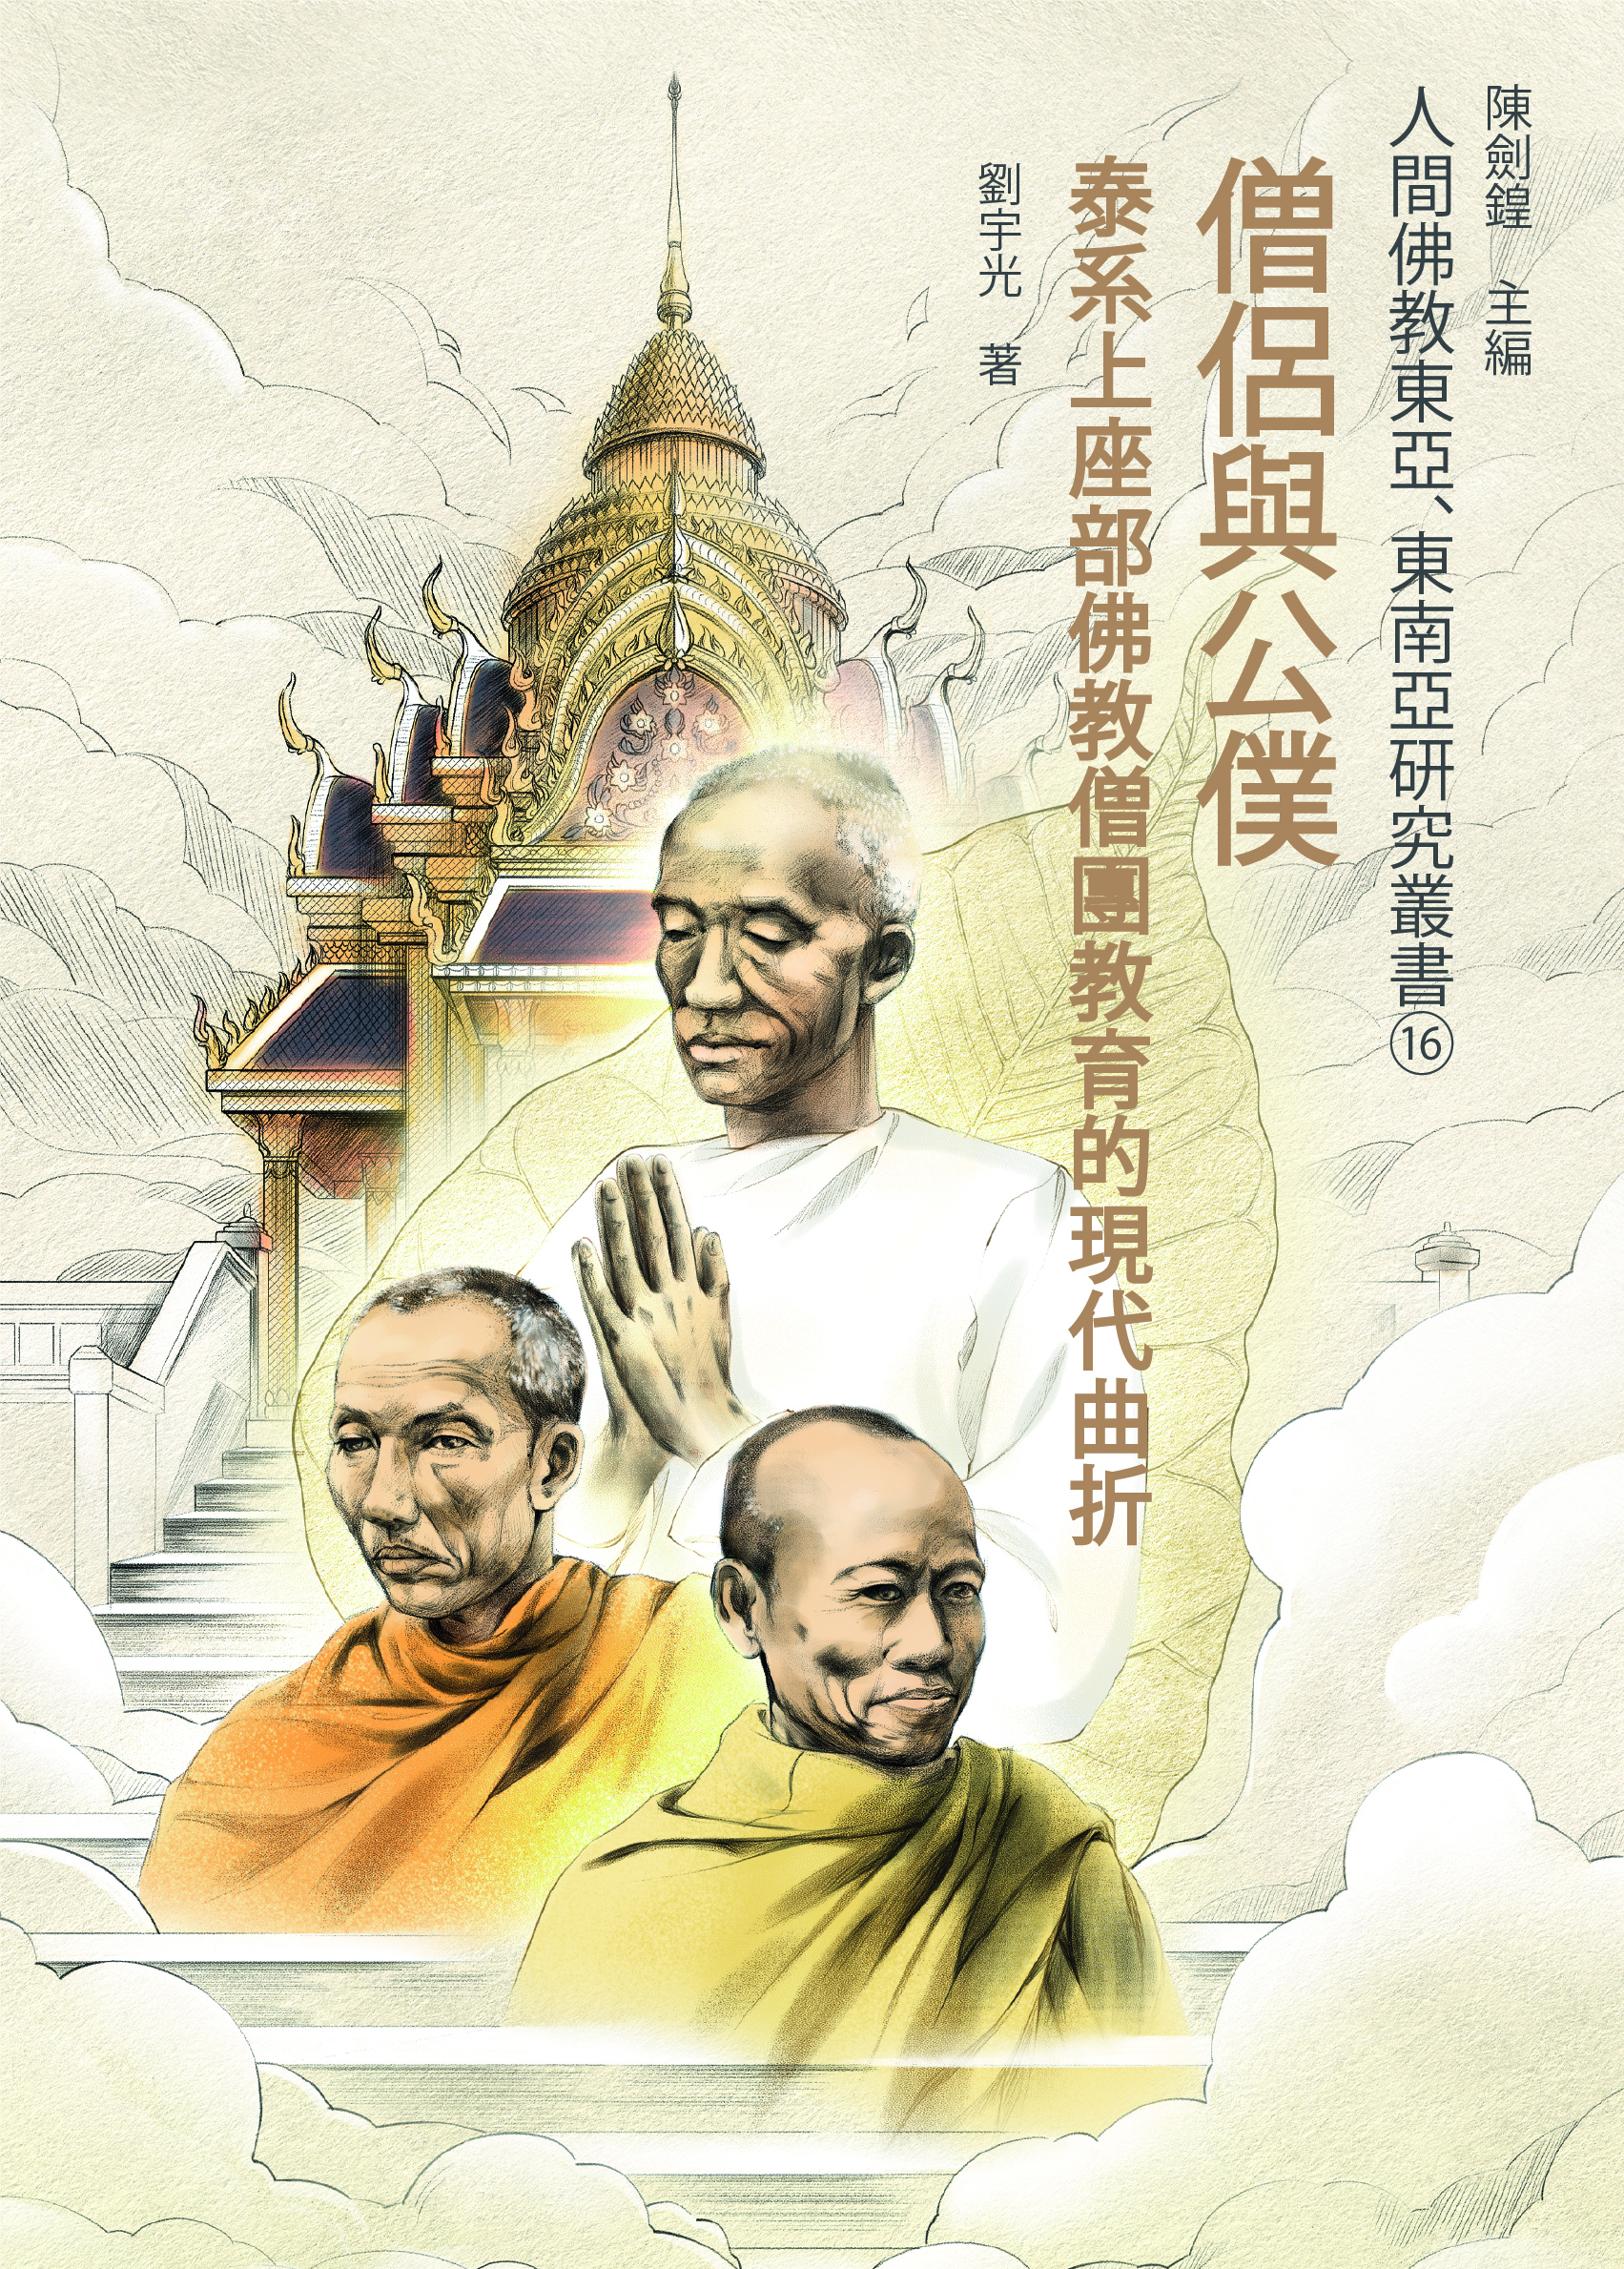 (16) 僧侶與公僕——泰系上座部佛教僧團教育的現代曲折